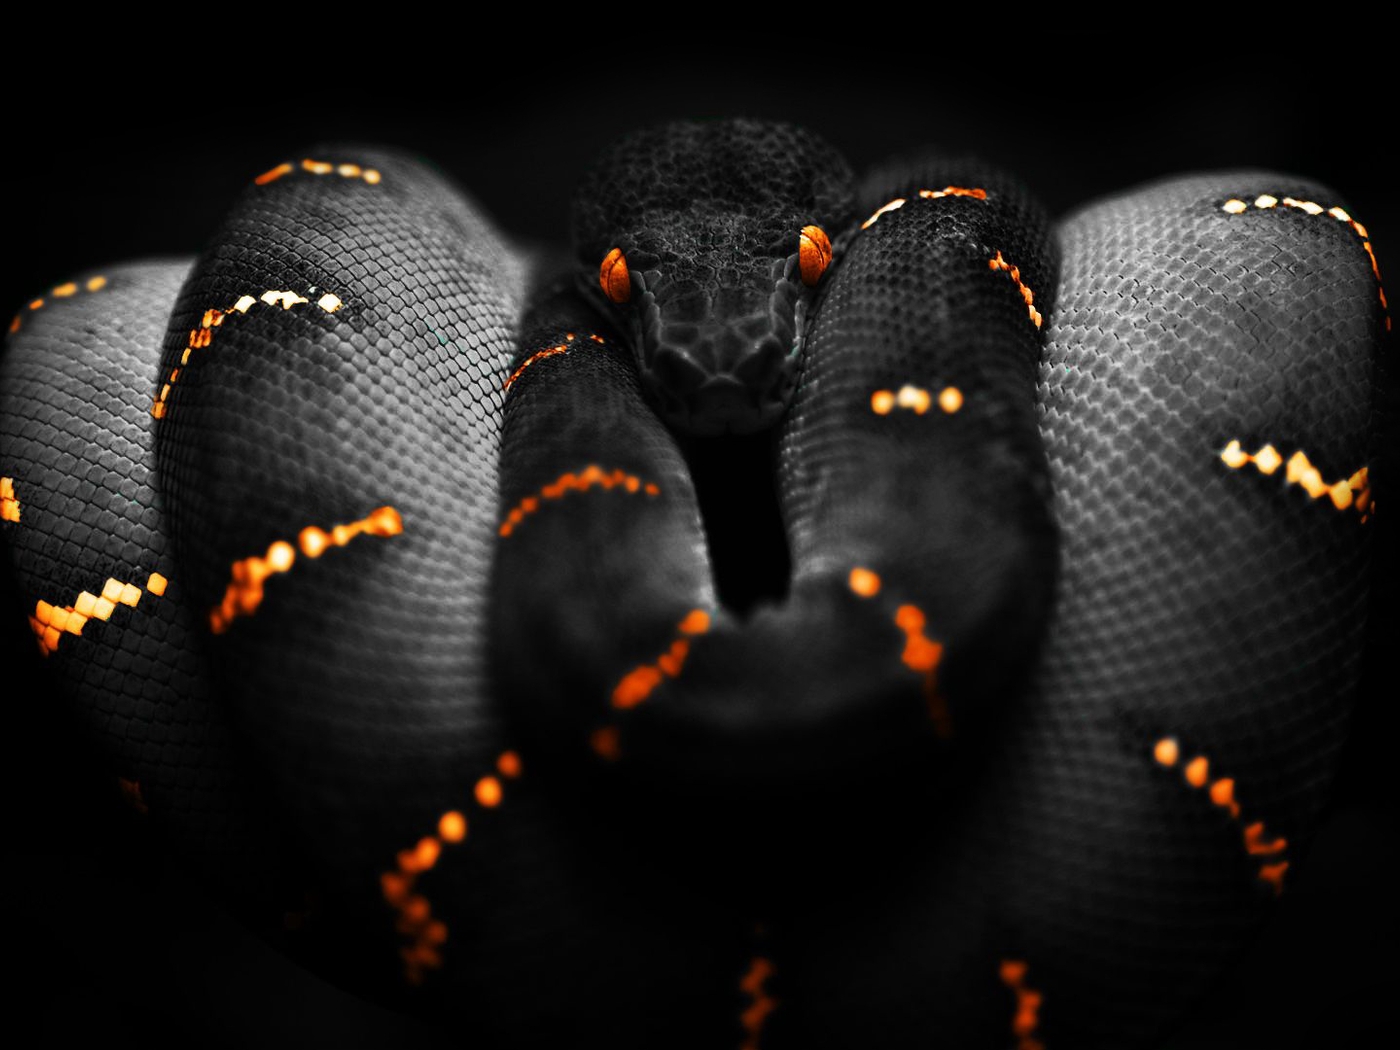 Картинка: Змея, кожа, чешуя, глаза, полосы, опасность, чёрный фон